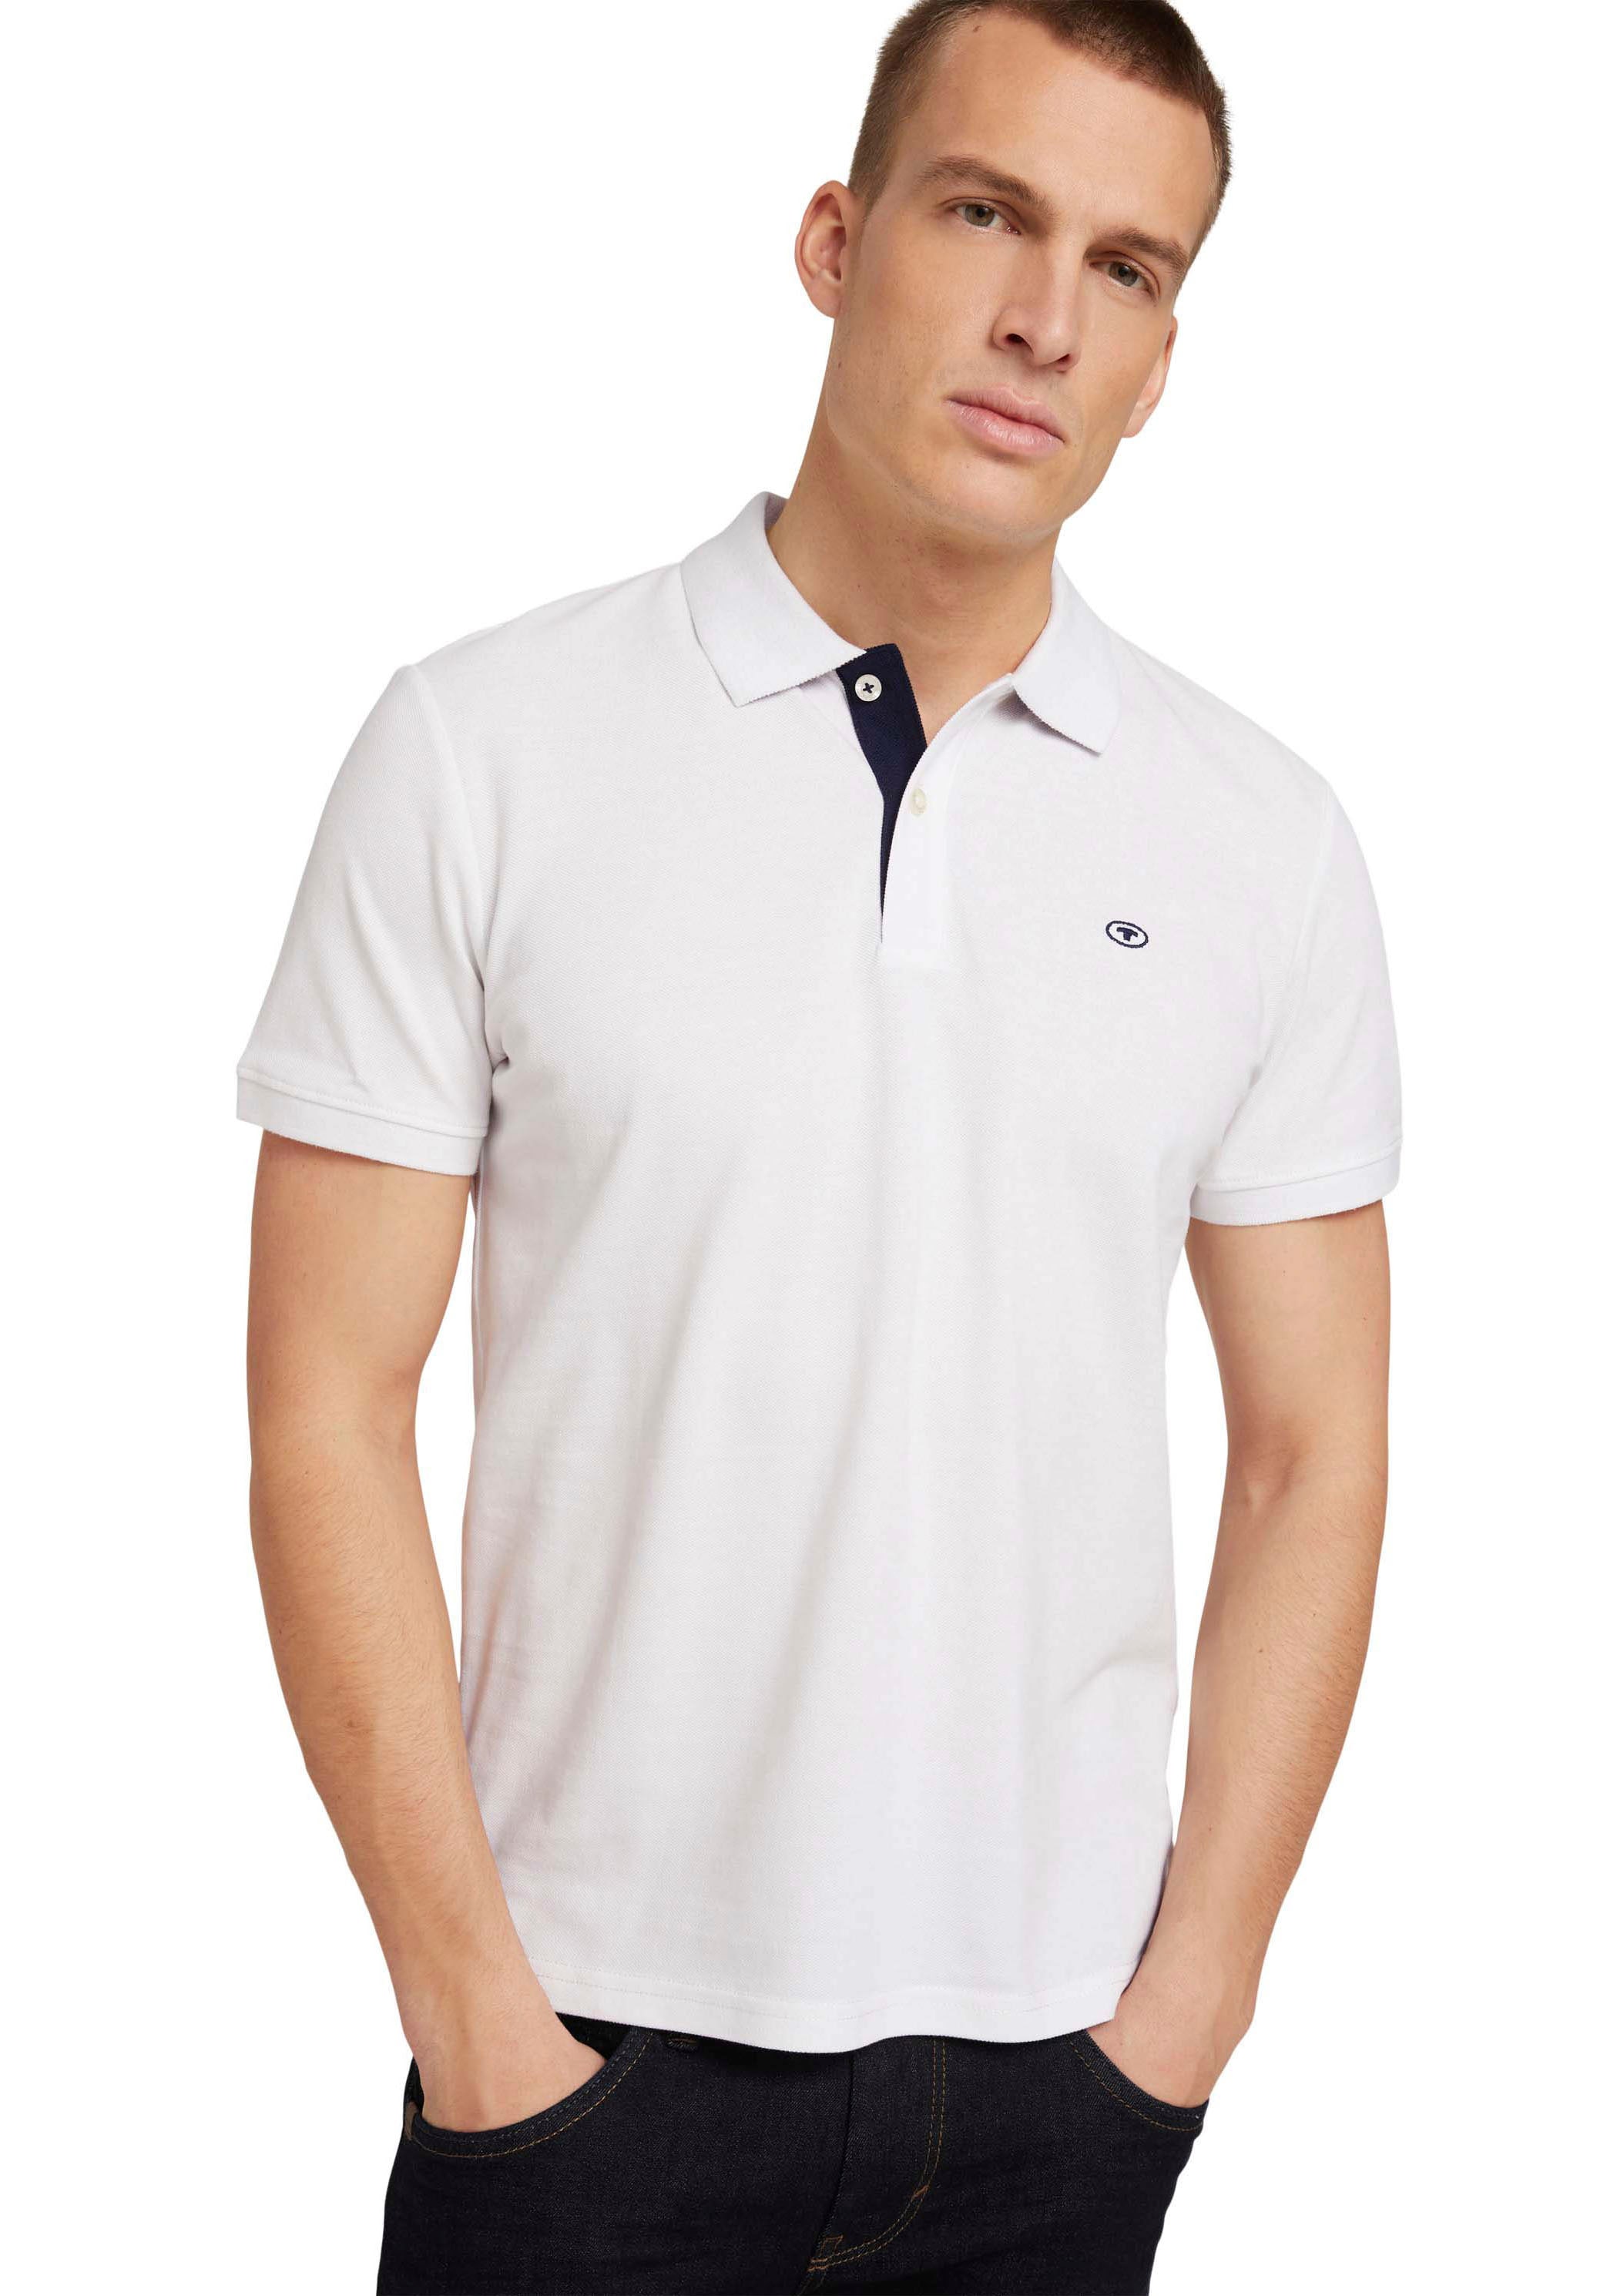 TOM TAILOR Poloshirt, mit kontrastfarbener Knopfleiste und kleinem Logo  online bei